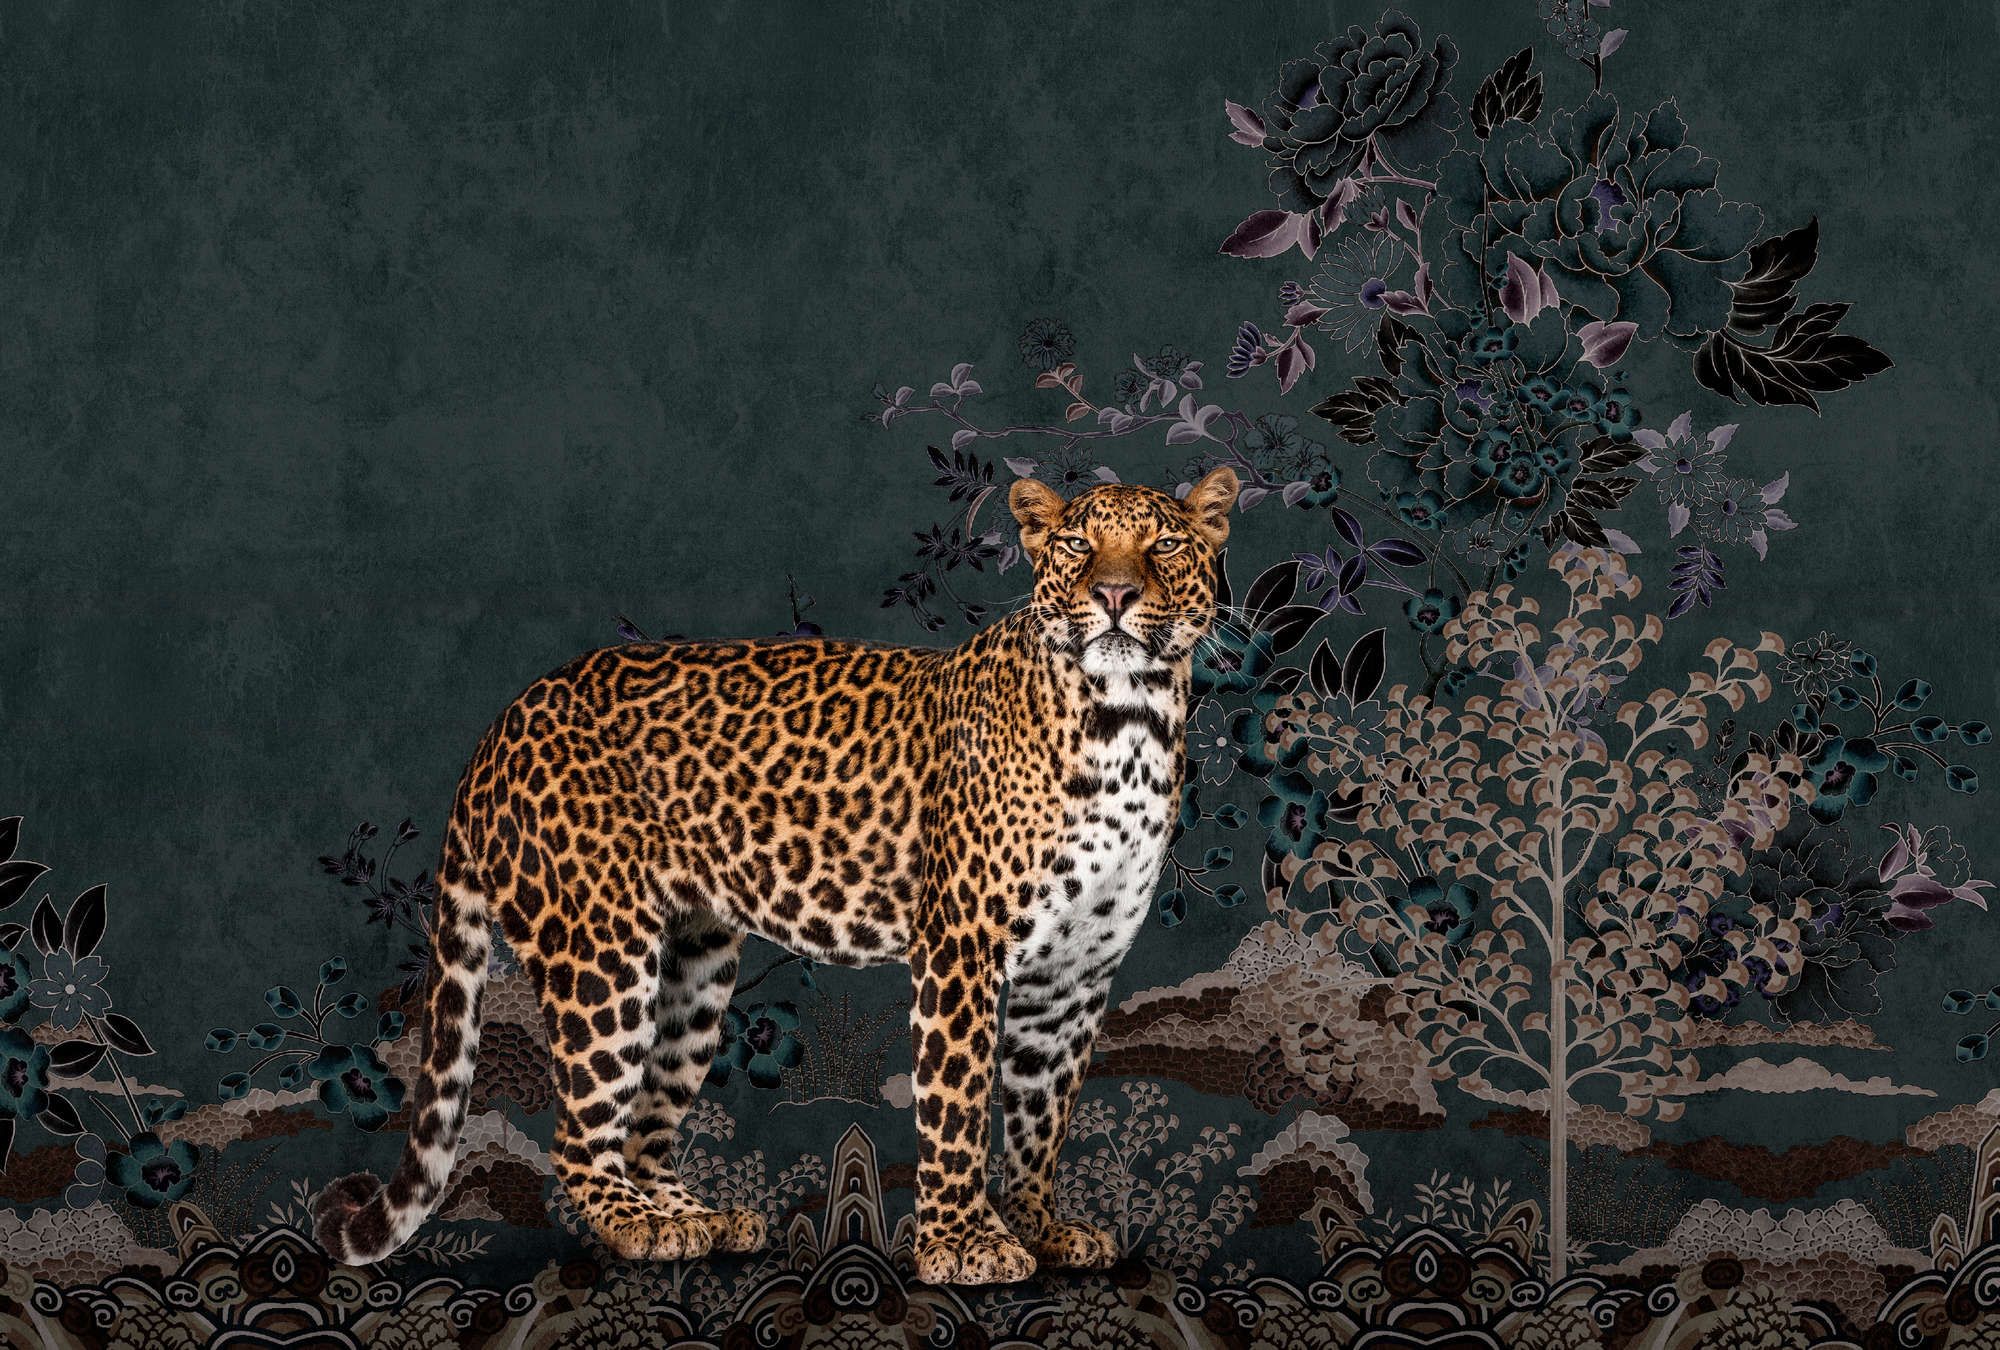             Fotomurali »rani« - Motivo astratto della giungla con leopardo - Materiali non tessuto liscio, leggermente perlato e luccicante
        